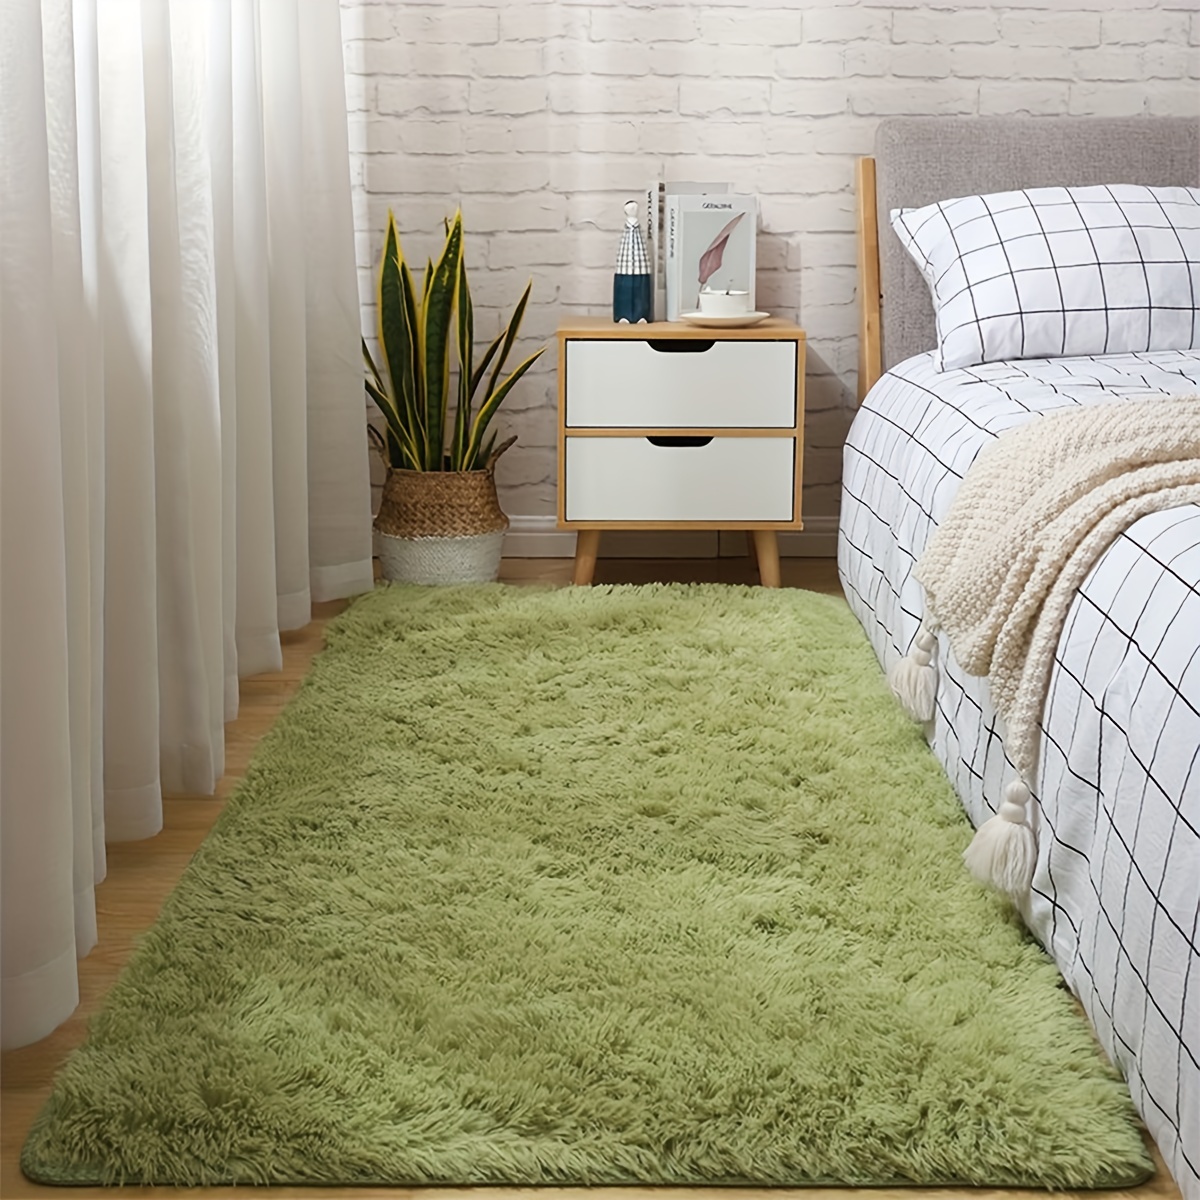  Alfombras para dormitorio de niños, alfombras suaves y